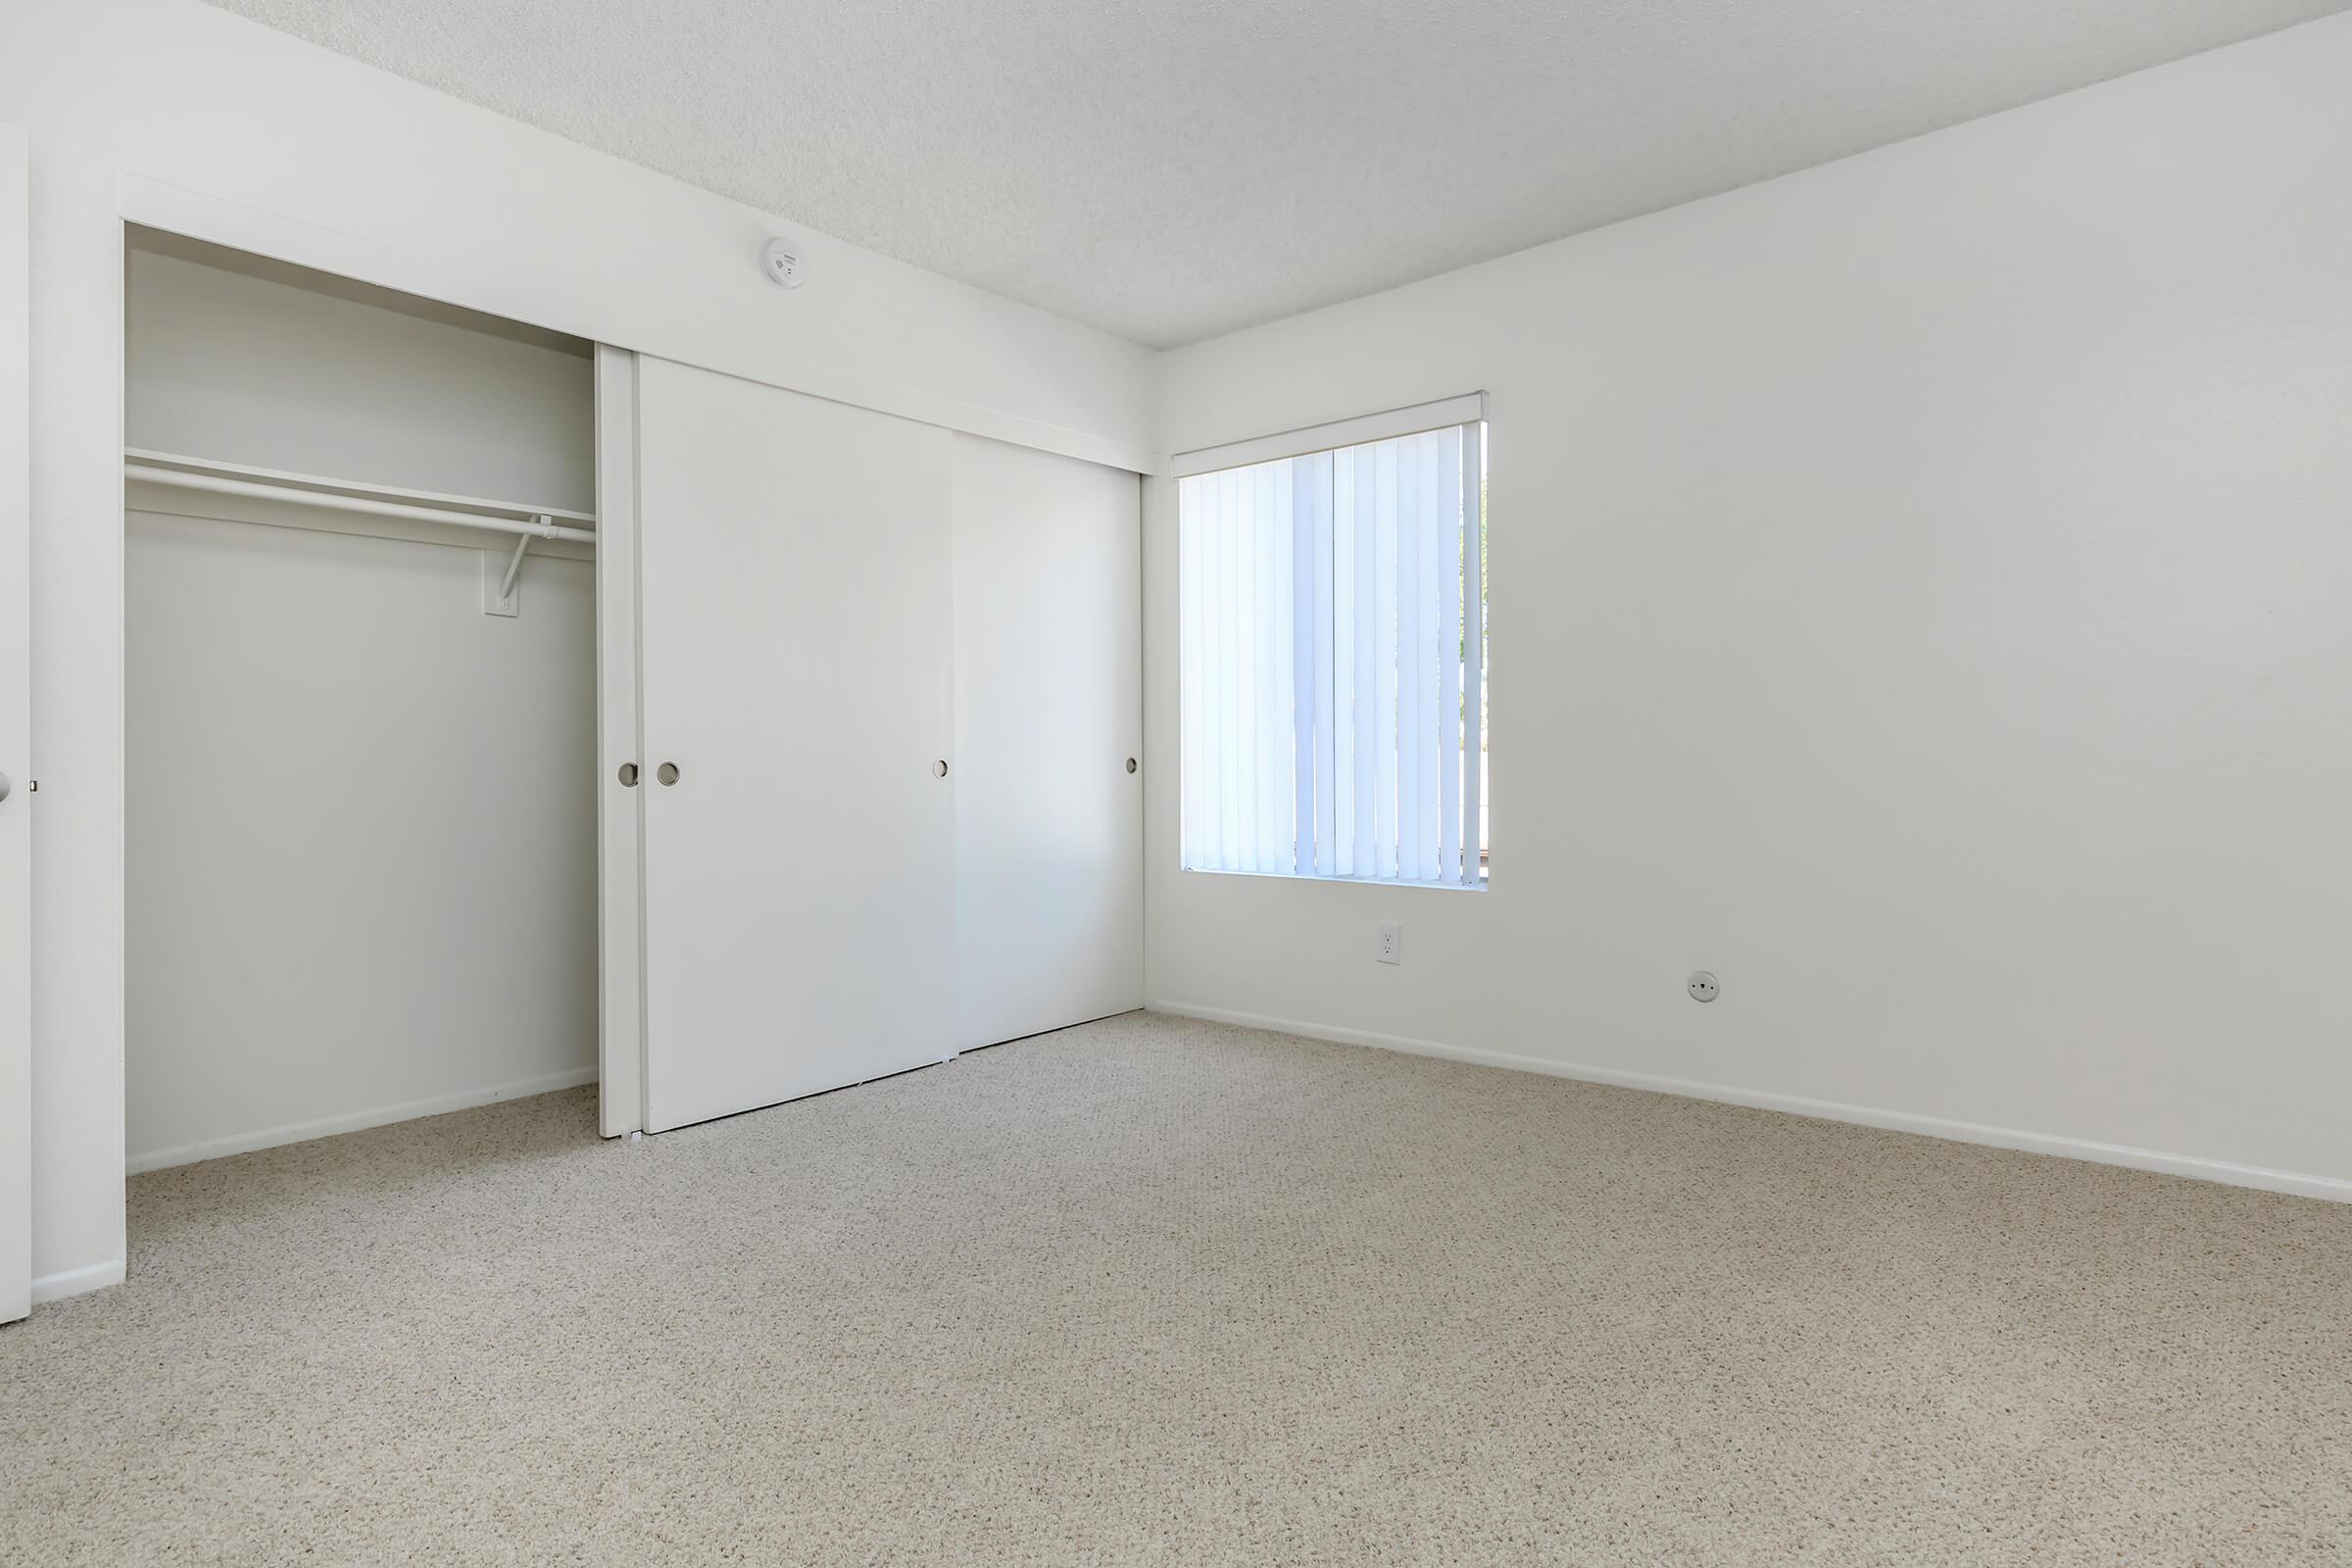 Carpeted bedroom with open sliding closet door